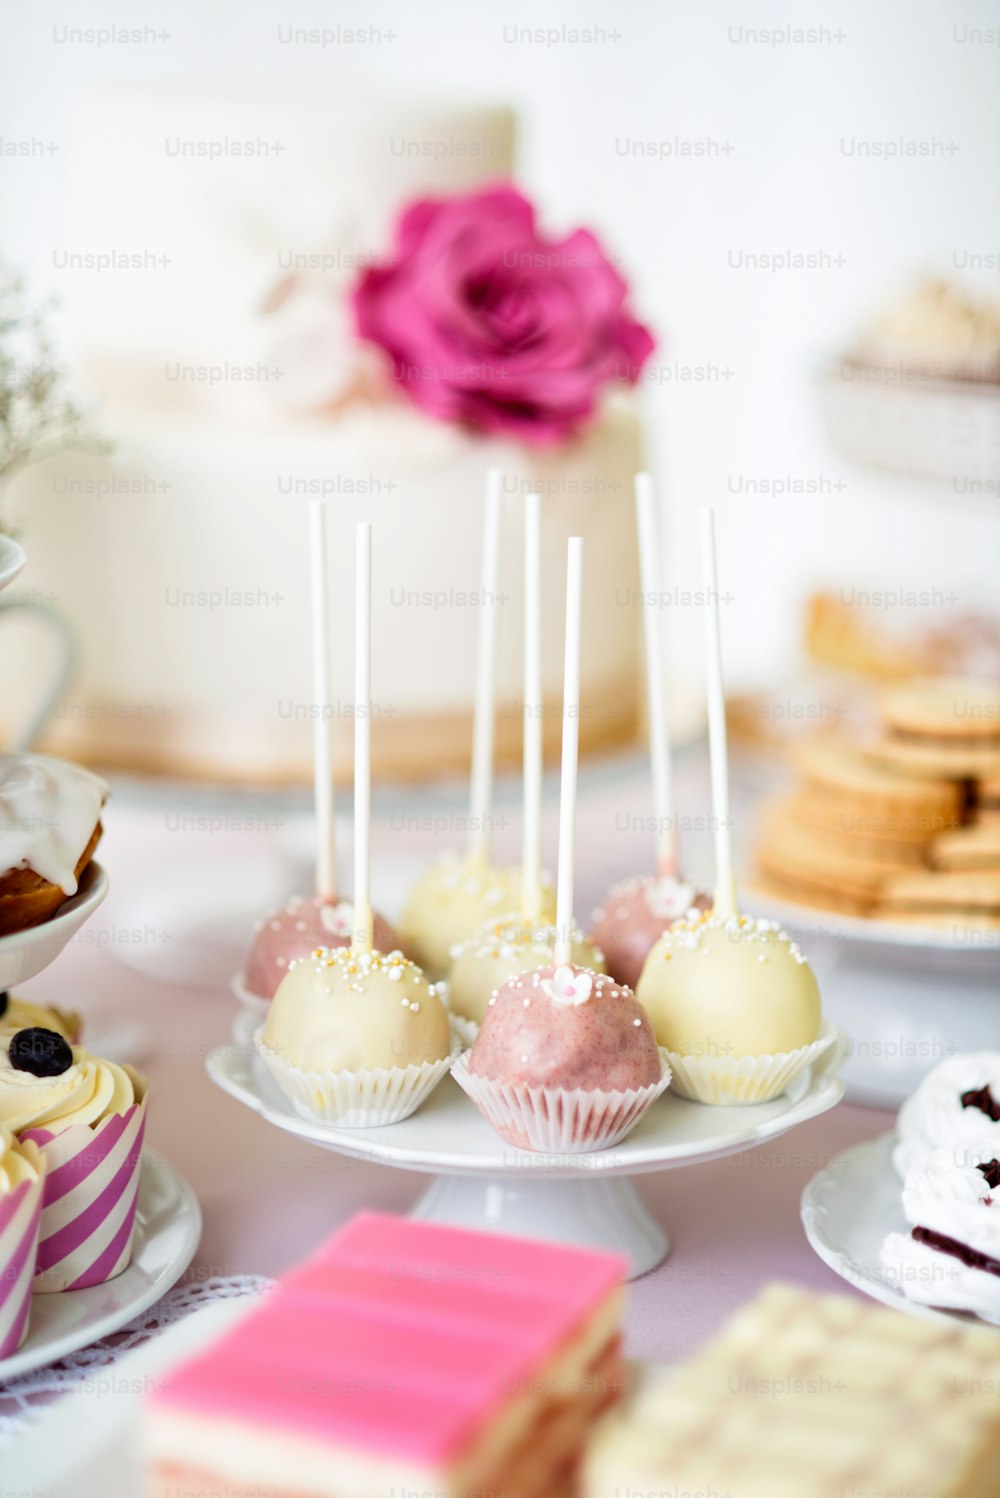 Table avec gâteaux blancs et roses pops sur le porte-gâteau et divers gâteaux. Barre chocolatée.